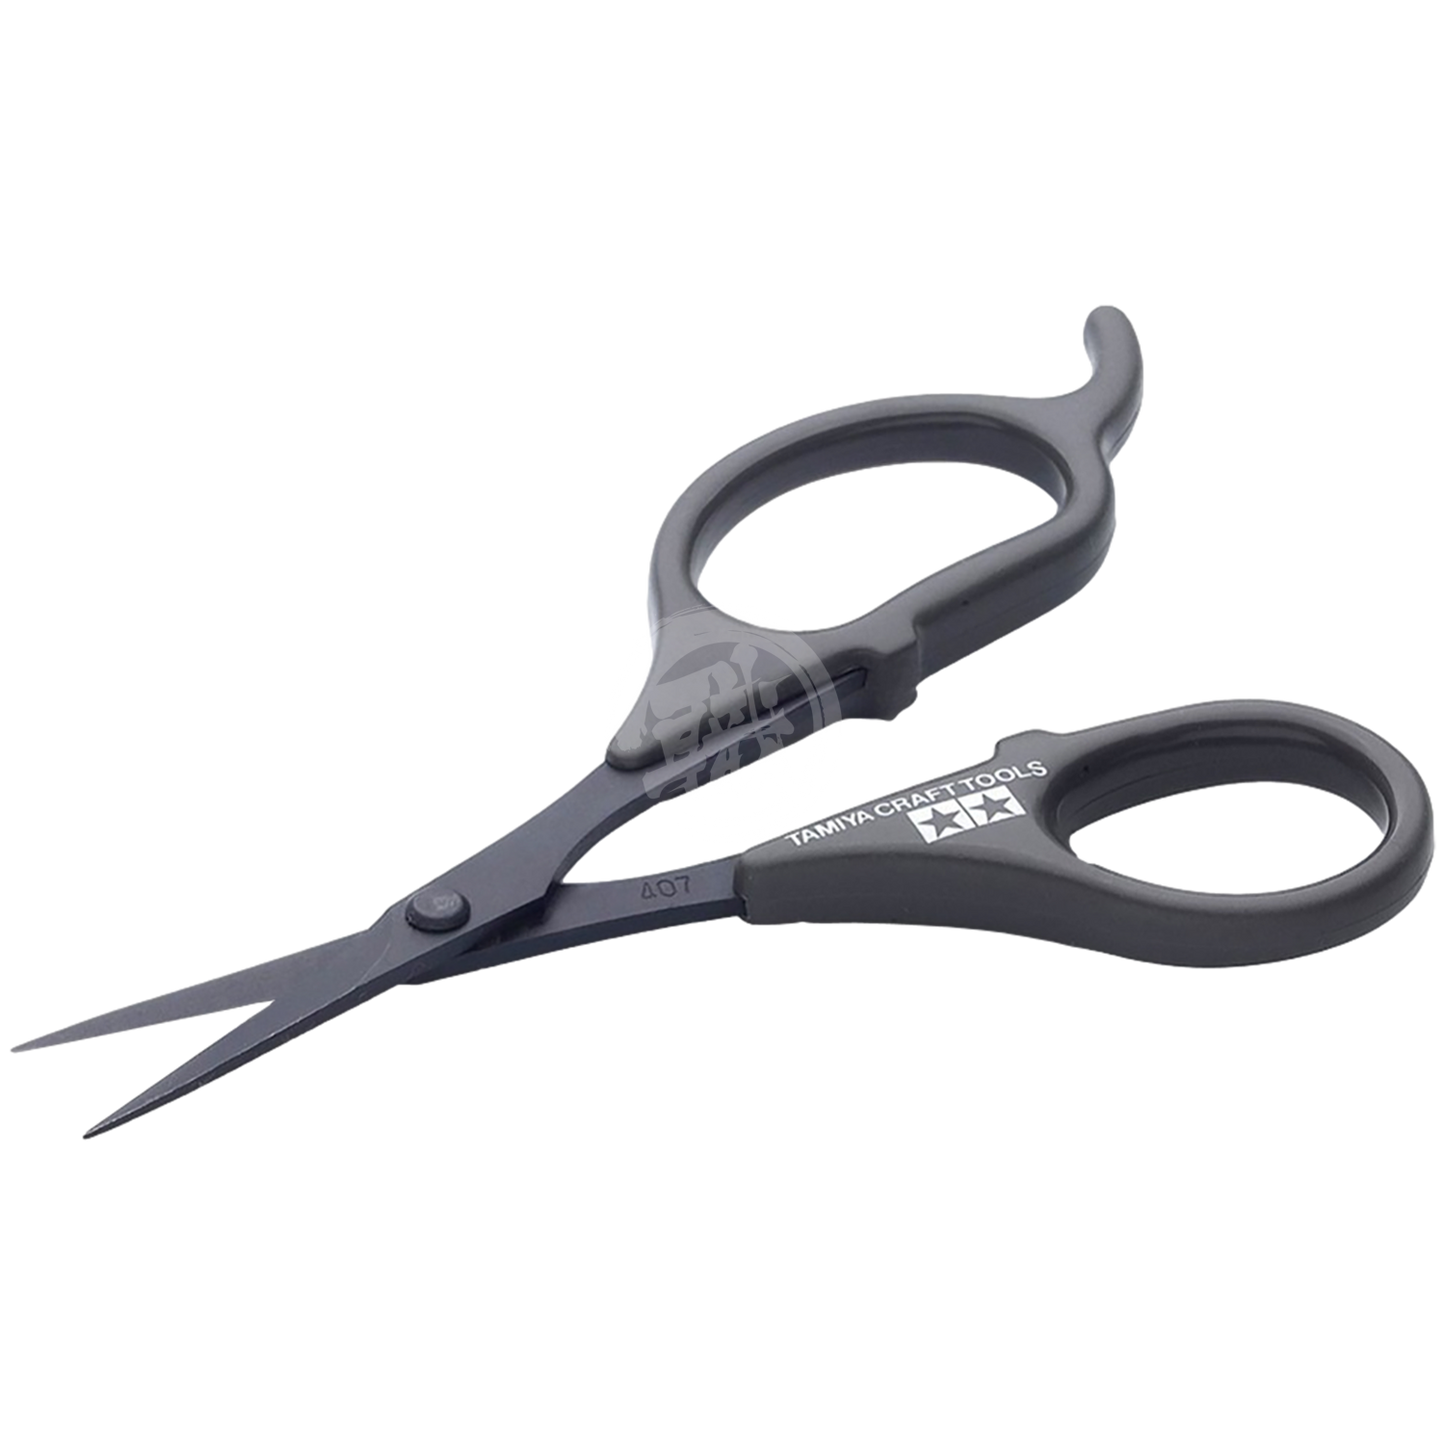 Tamiya - Decal Scissors [74031] - ShokuninGunpla